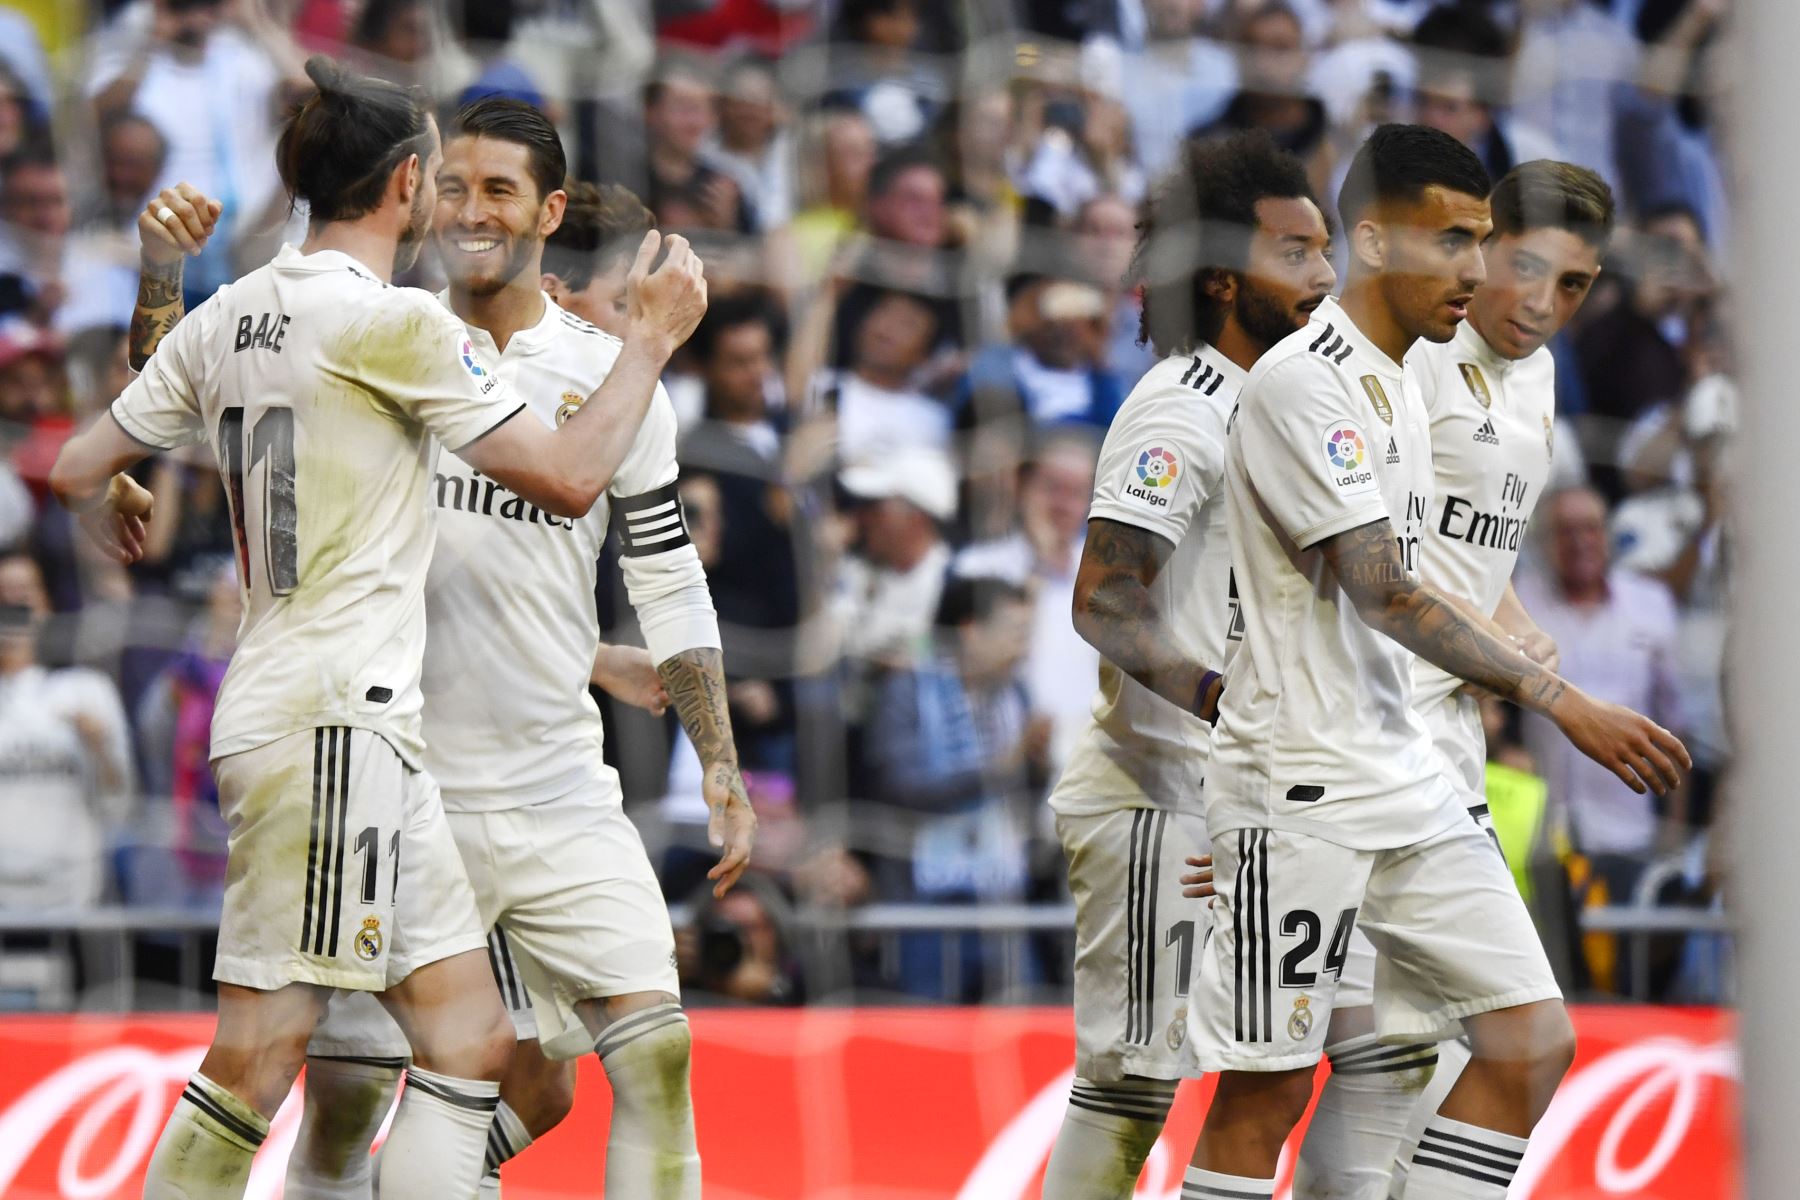 El delantero galÃ©s del Real Madrid Gareth Bale (L) celebra su gol con el defensor espaÃ±ol del Real Madrid Sergio Ramos durante el partido de fÃºtbol de la liga espaÃ±ola entre el Real Madrid CF y el RC Celta de Vigo.Foto:AFP